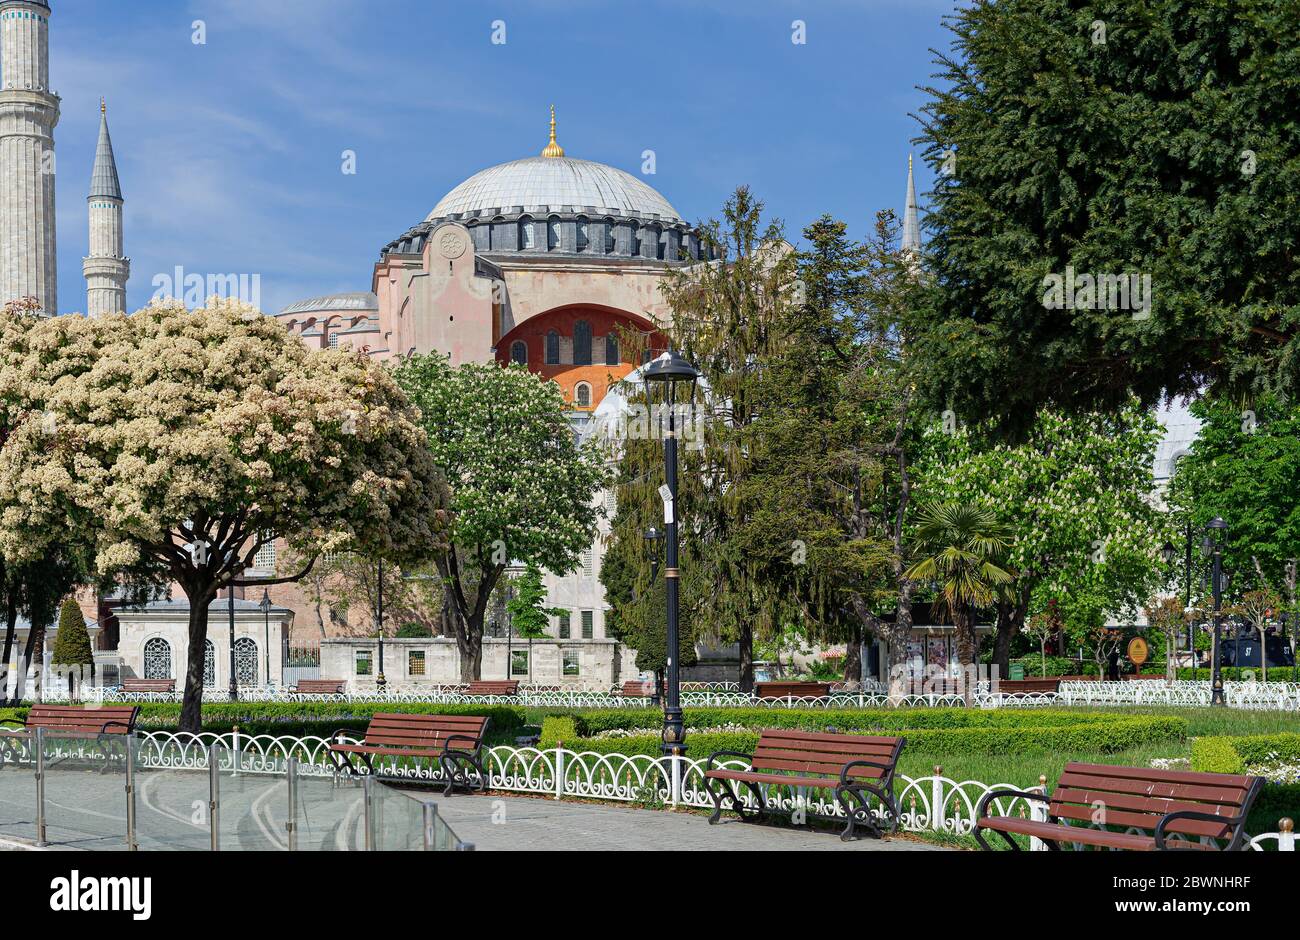 Saint Sophia,Hagia Sophia, Ayasofia historical landmark Istanbul, Turkey Stock Photo